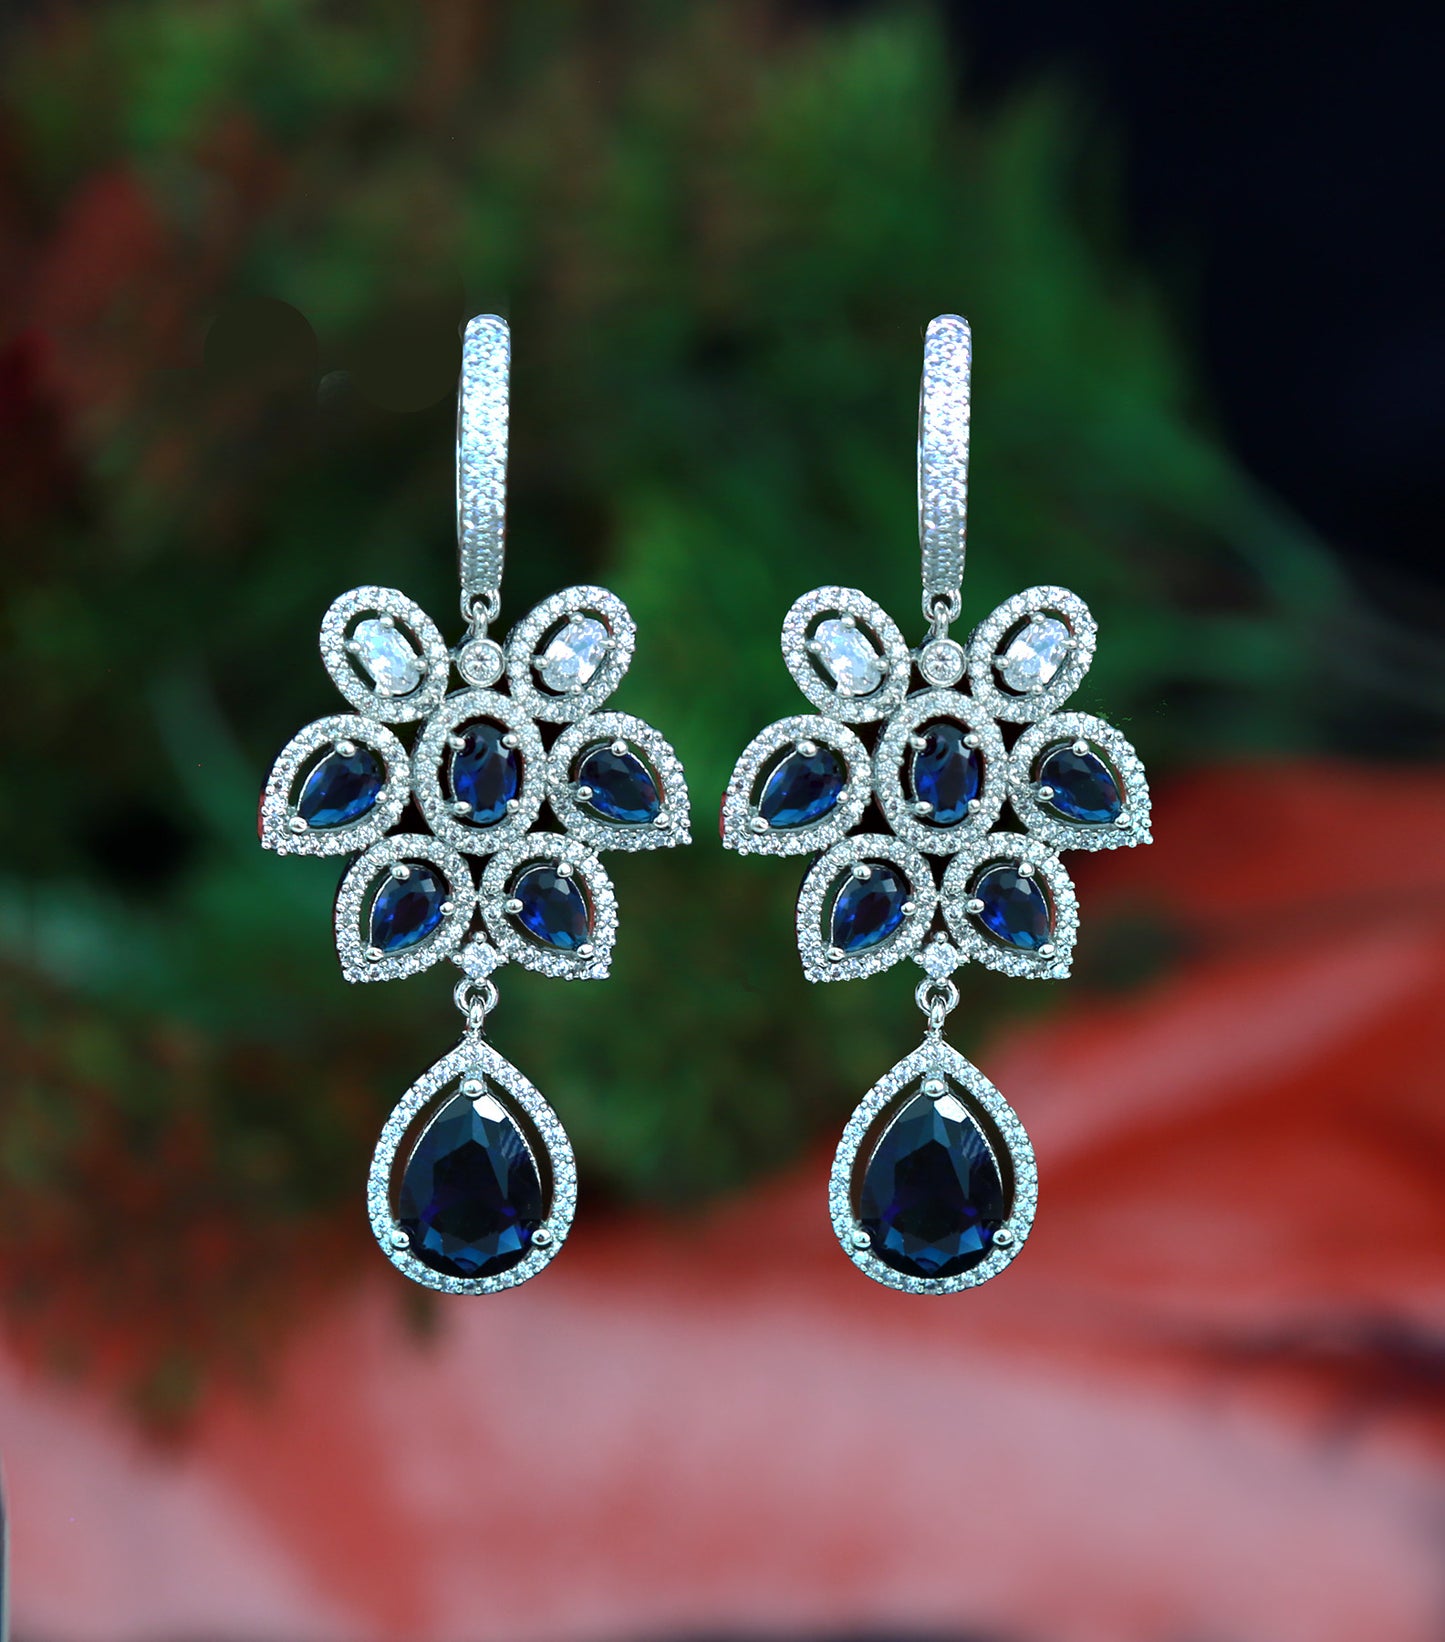 Best Quality American diamond earrings in gold Polish | CZ Ad dangler earrings | Cubic zirconia drop earrings silver | Crystal drop earrings